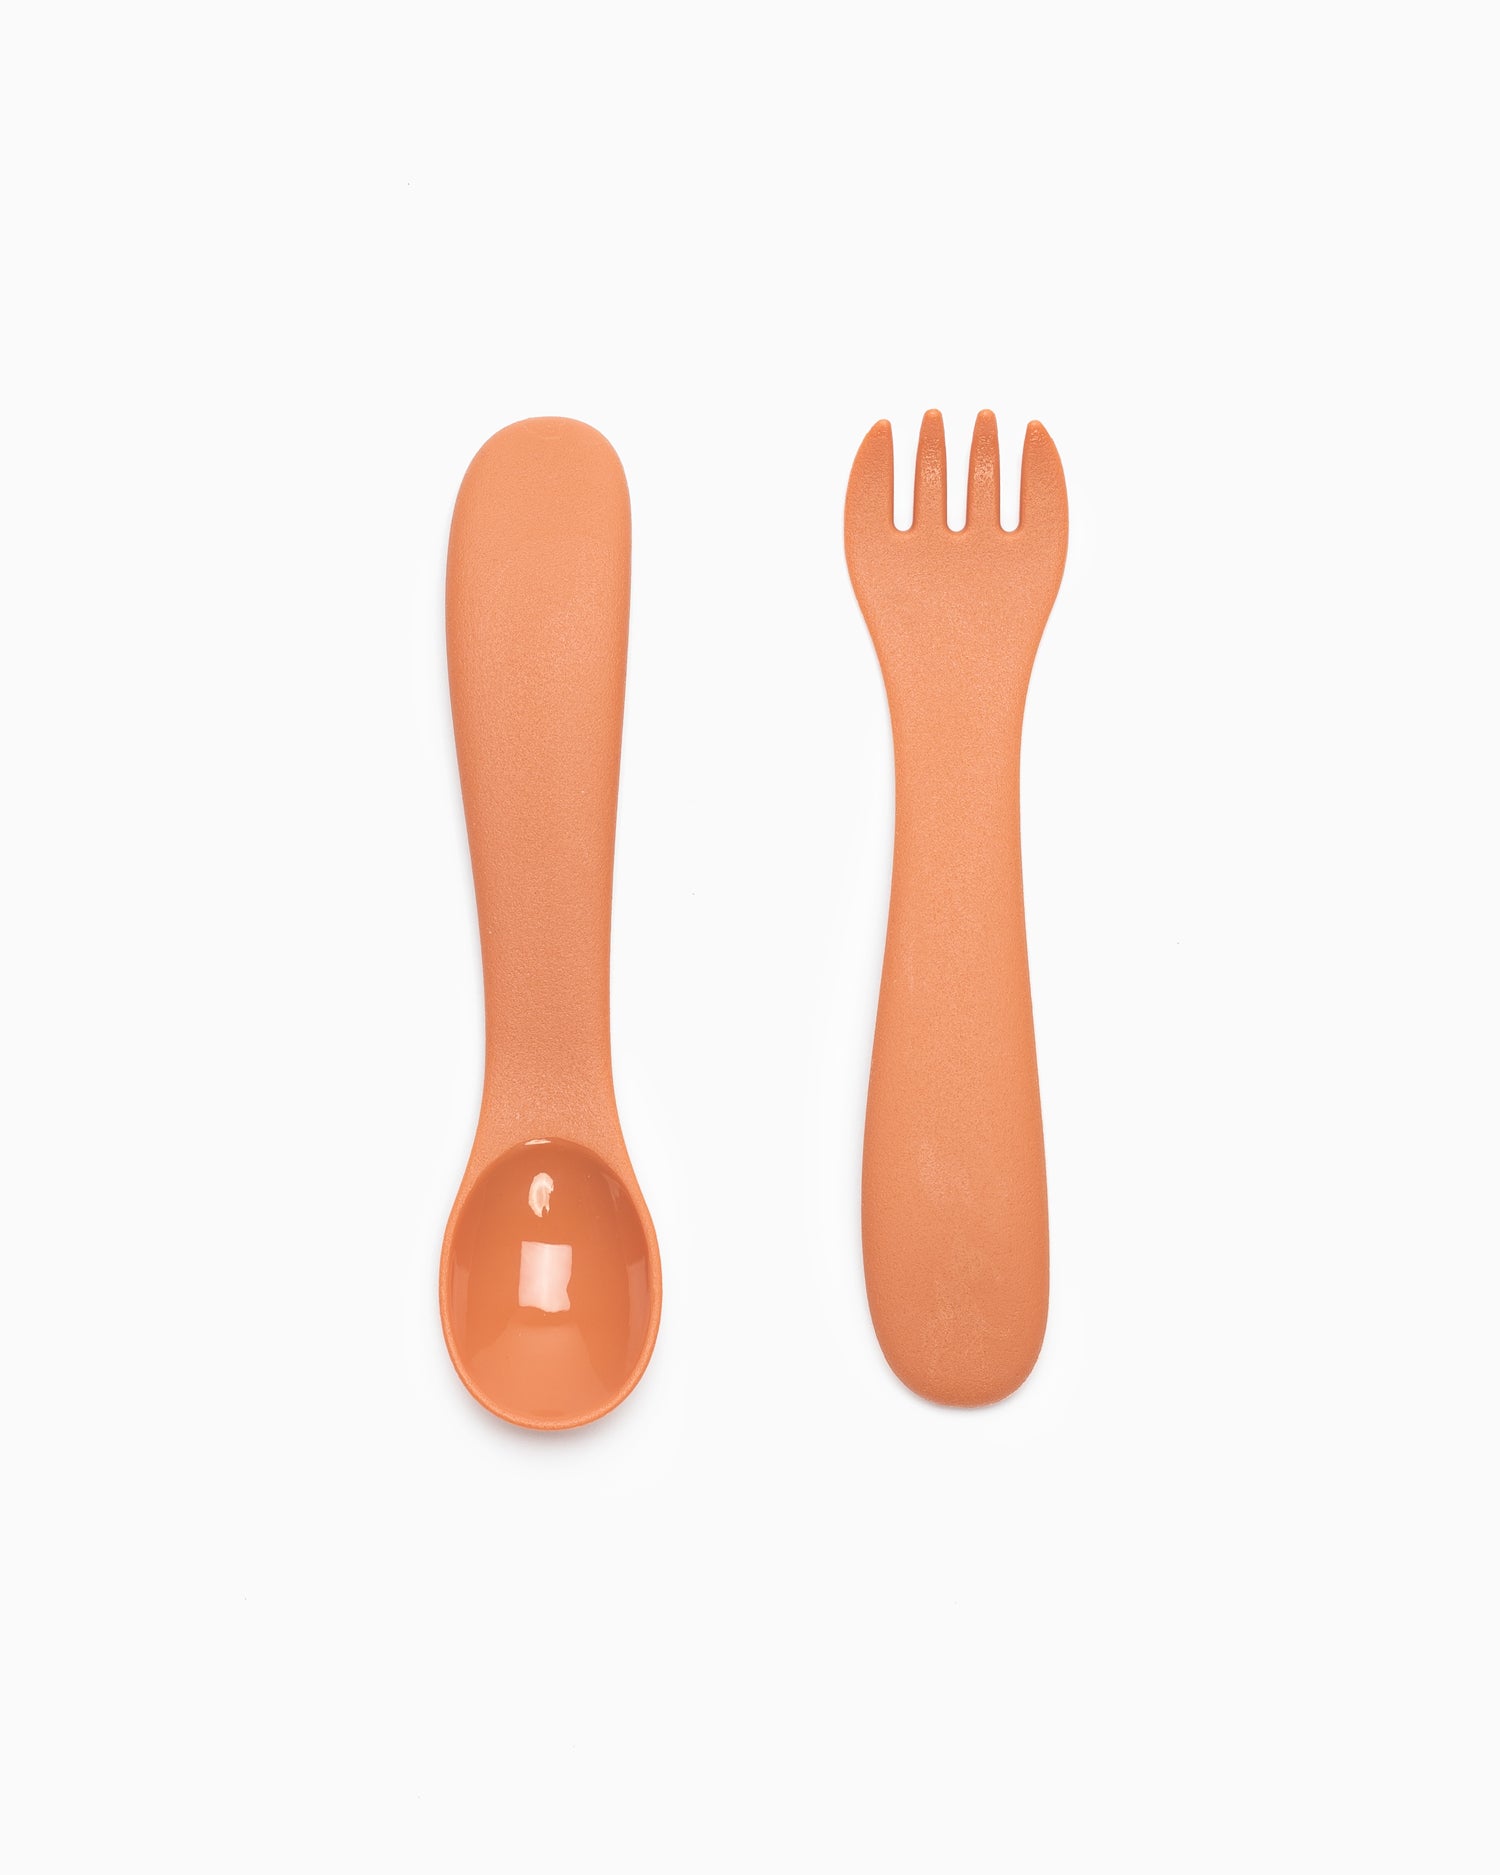 Bonbo Spoon & Fork - Orange